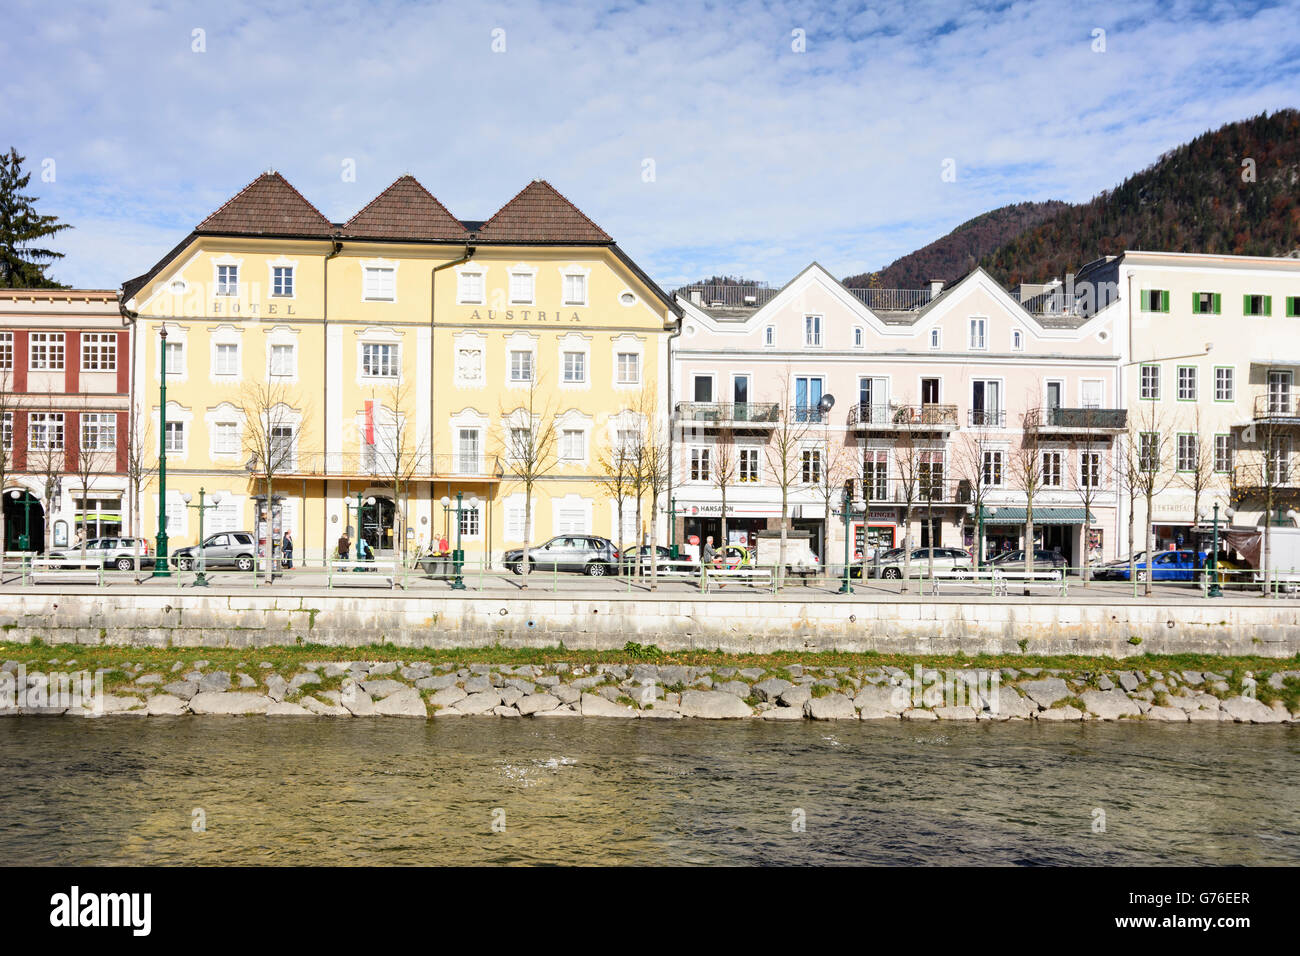 Esplanade avec l'ancien Hôtel Autriche (aujourd'hui musée de la ville ) sur Traunufer, Bad Ischl, Autriche, Niederösterreich, Autriche supérieure, Salz Banque D'Images